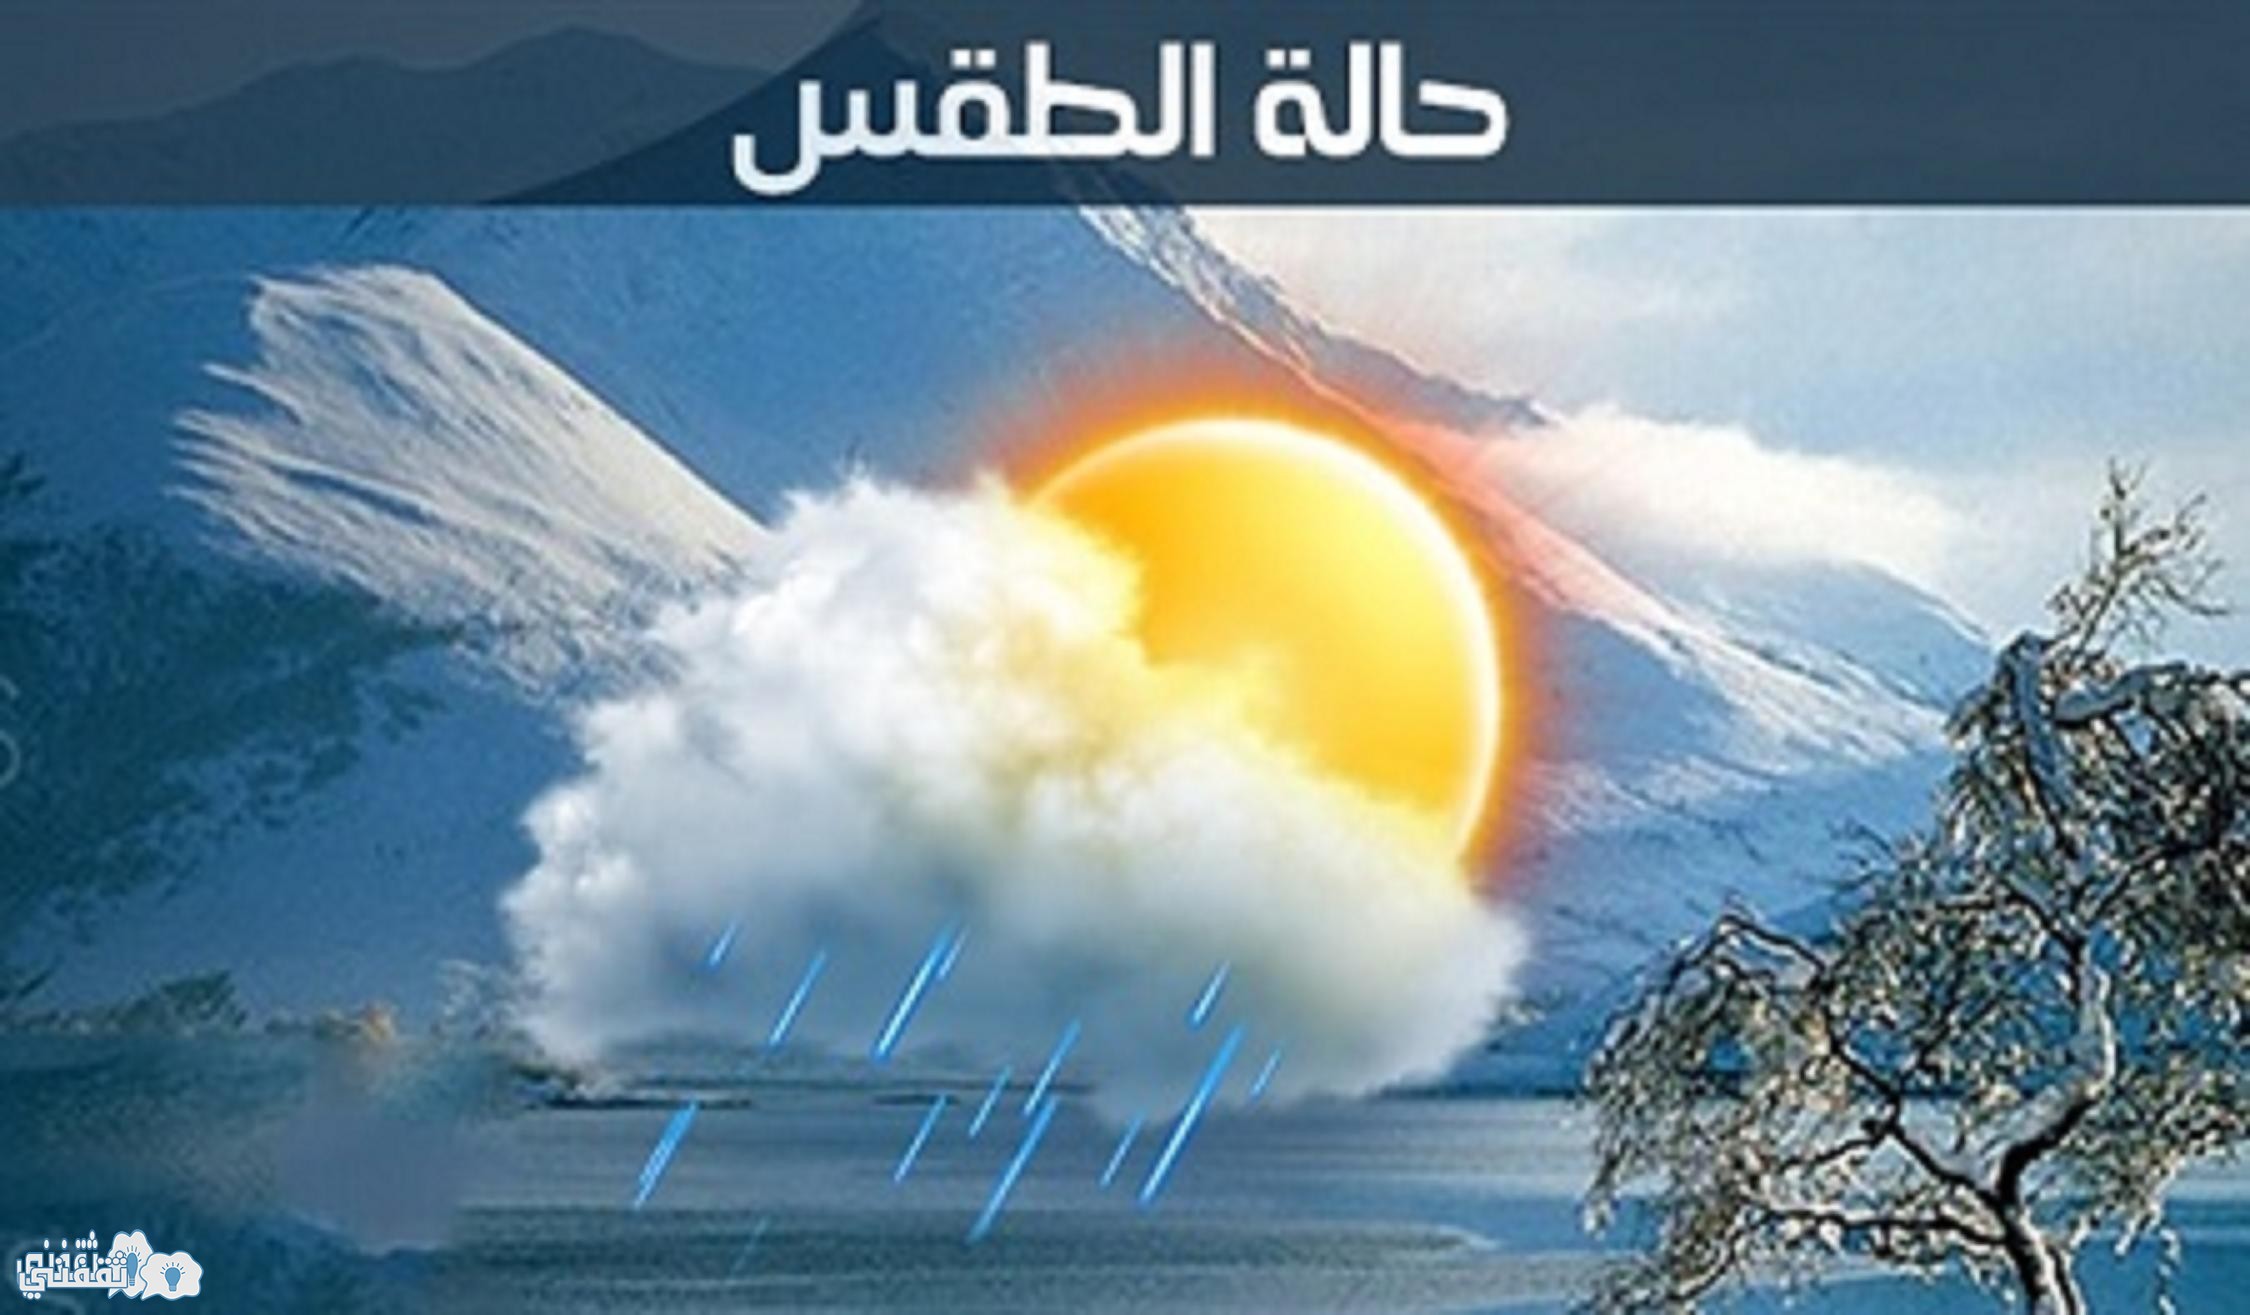 حالة الطقس اليوم وغدا في مصر مع بيان بدرجات الحرارة